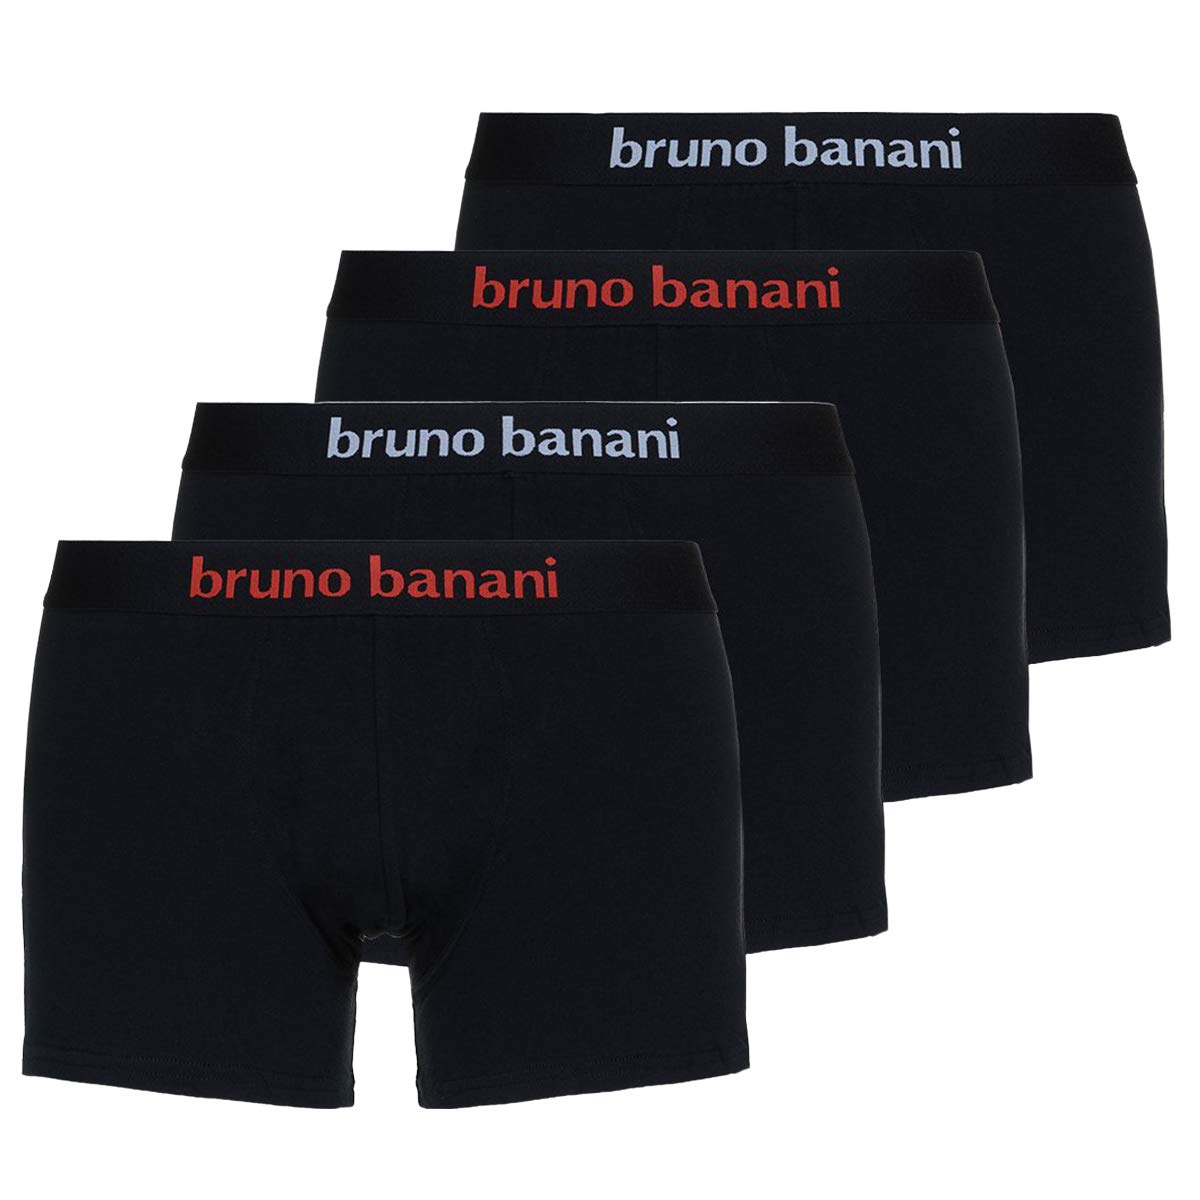 bruno banani - Flowing - Short - 4er Pack (5 Schwarz (Rot/Weiß))